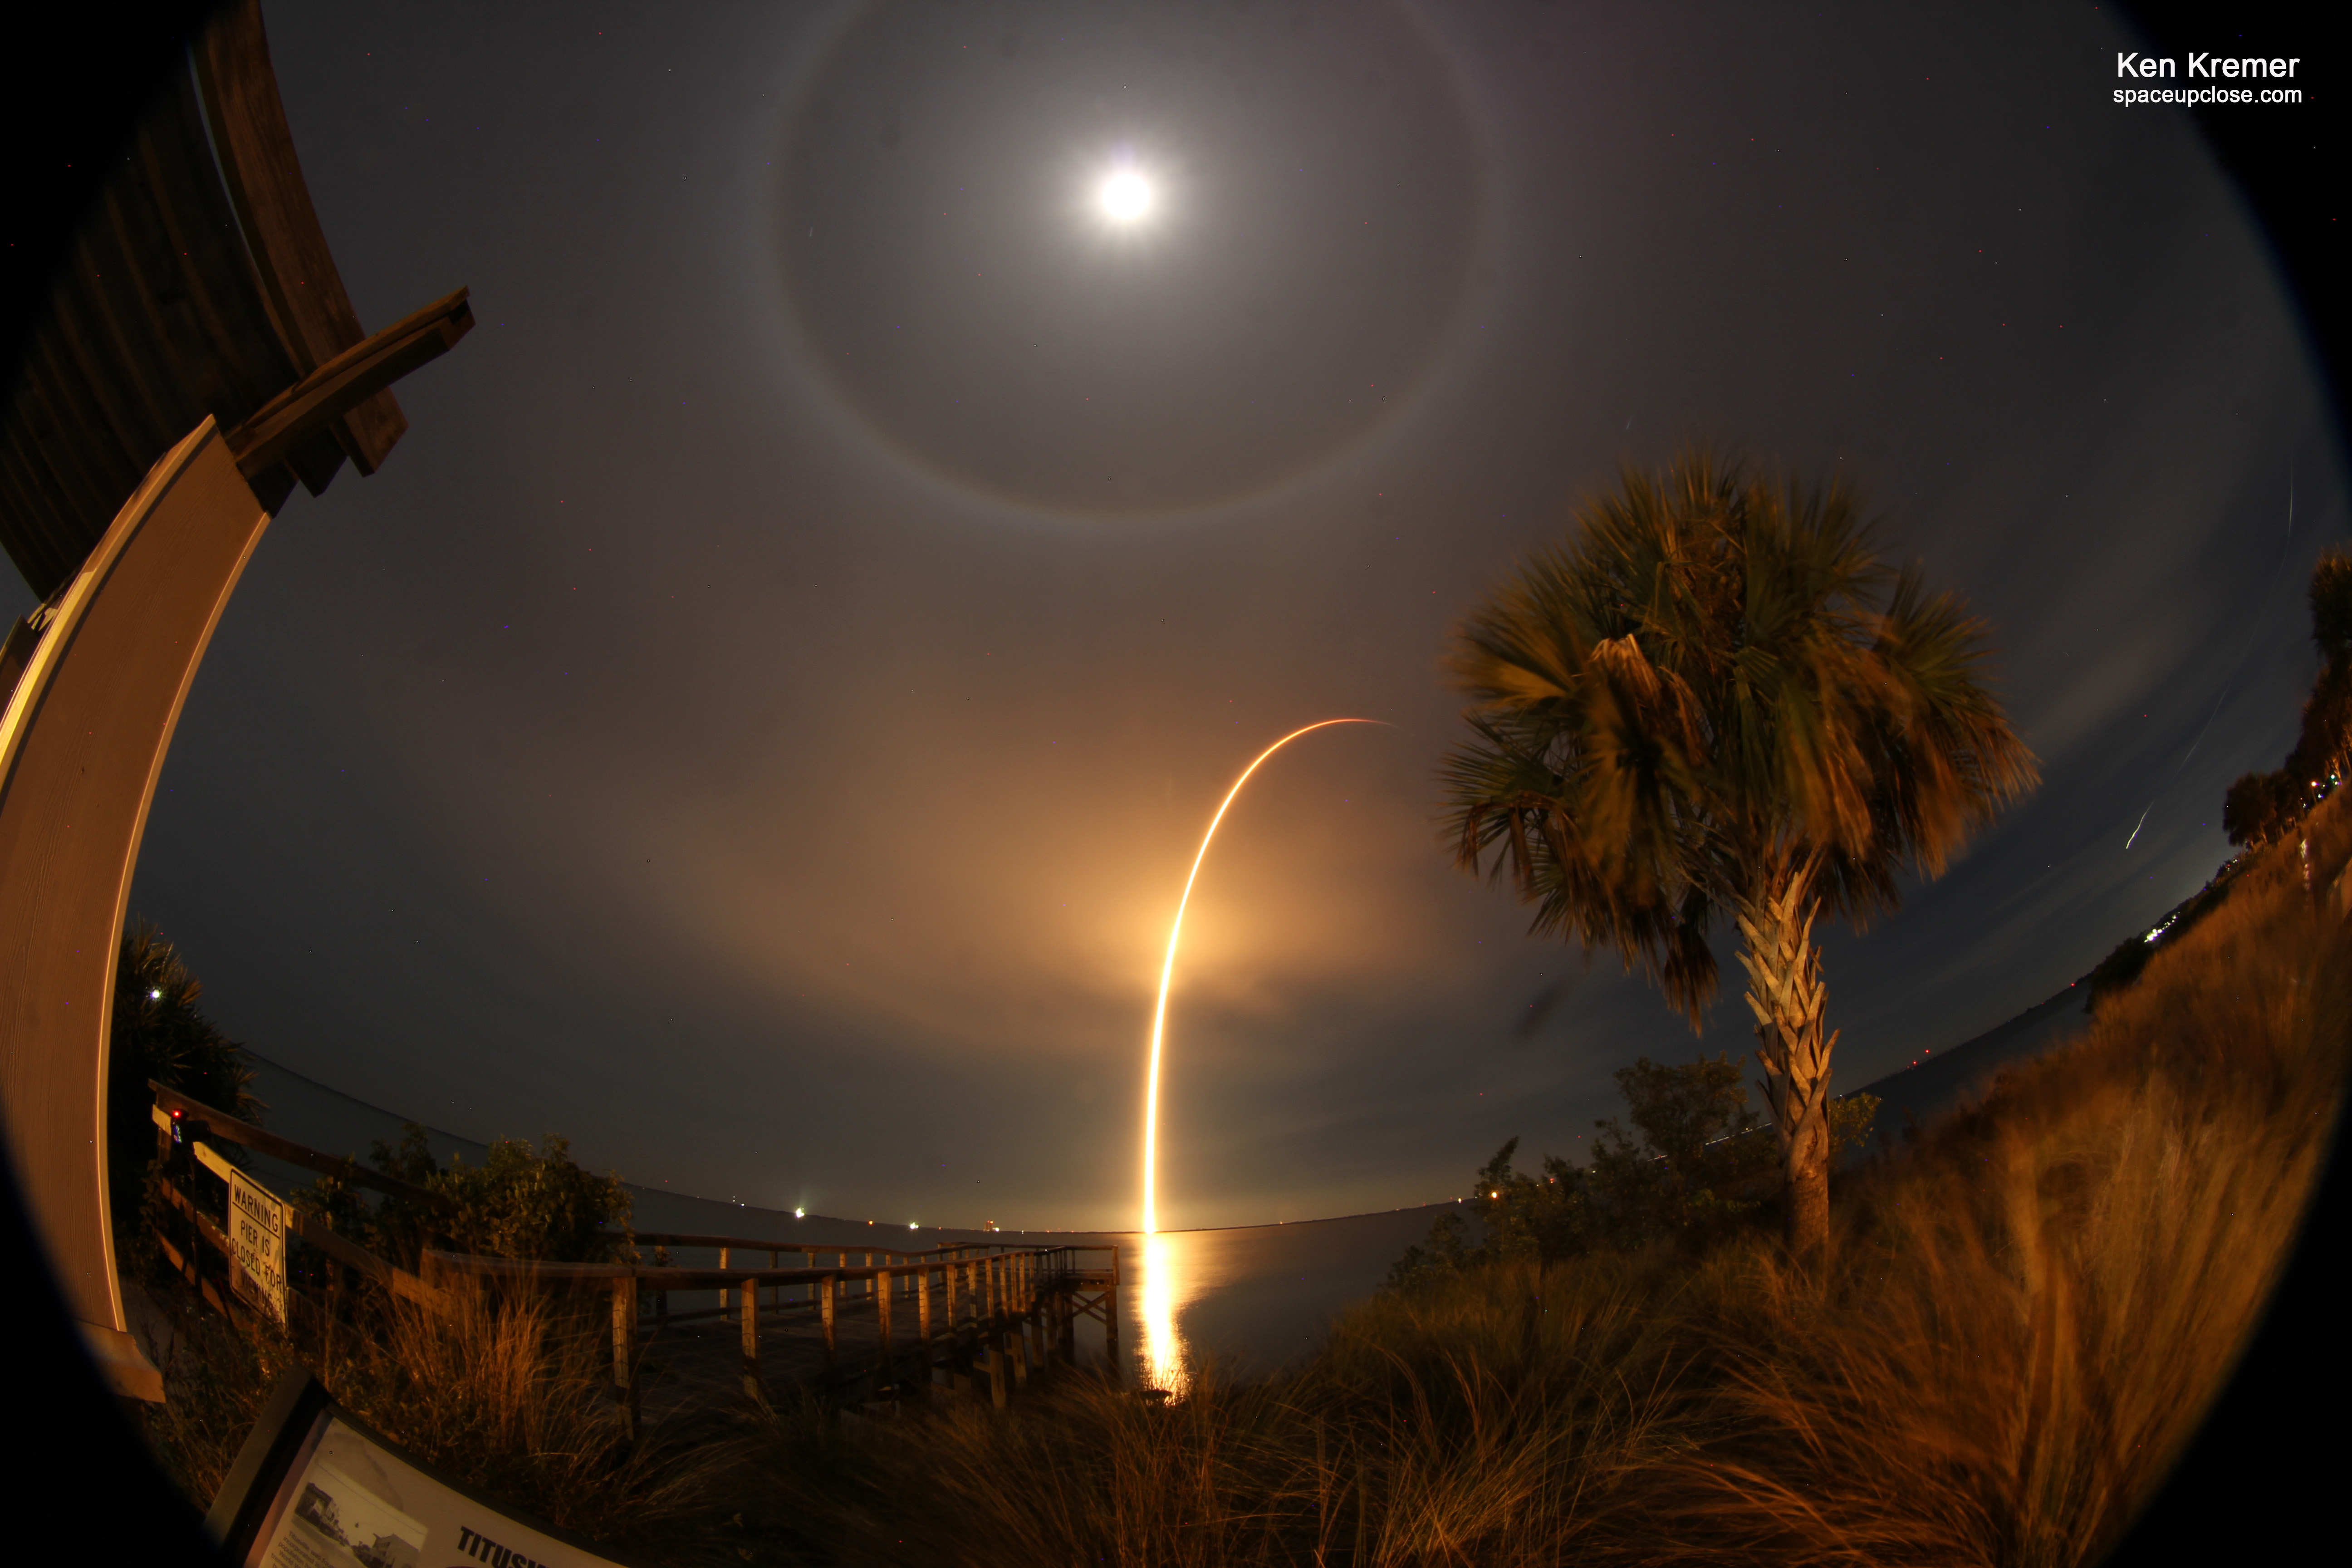 La luna llena se puede ver en el cielo sobre un arco formado por el lanzamiento de un cohete.